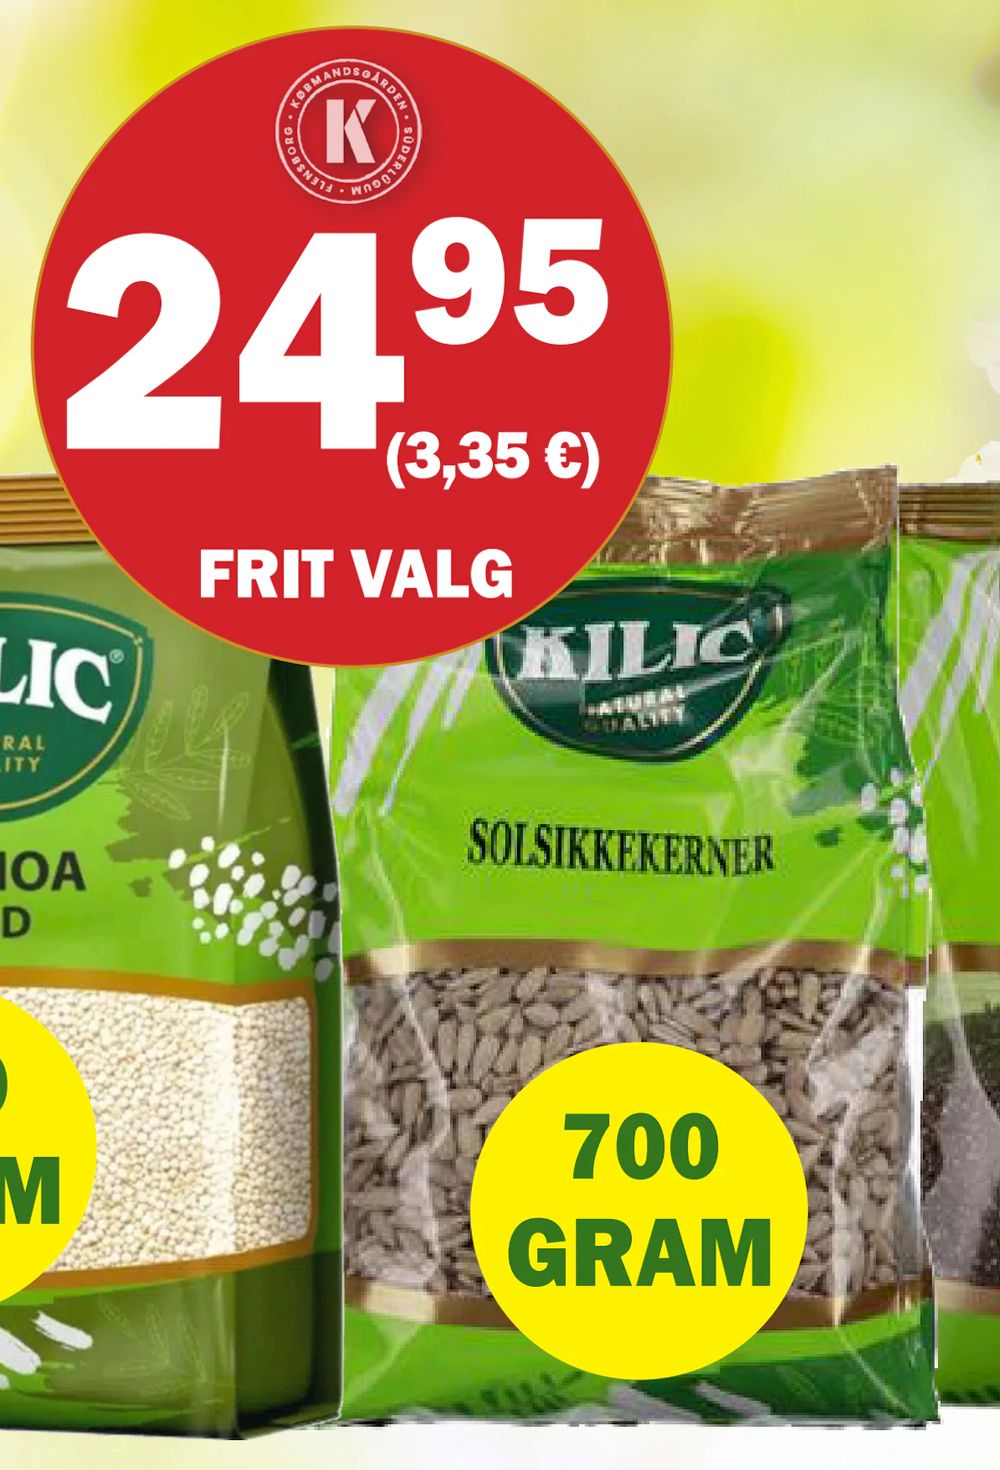 Tilbud på Kilic Solsikkekerner fra Købmandsgården til 24,95 kr.